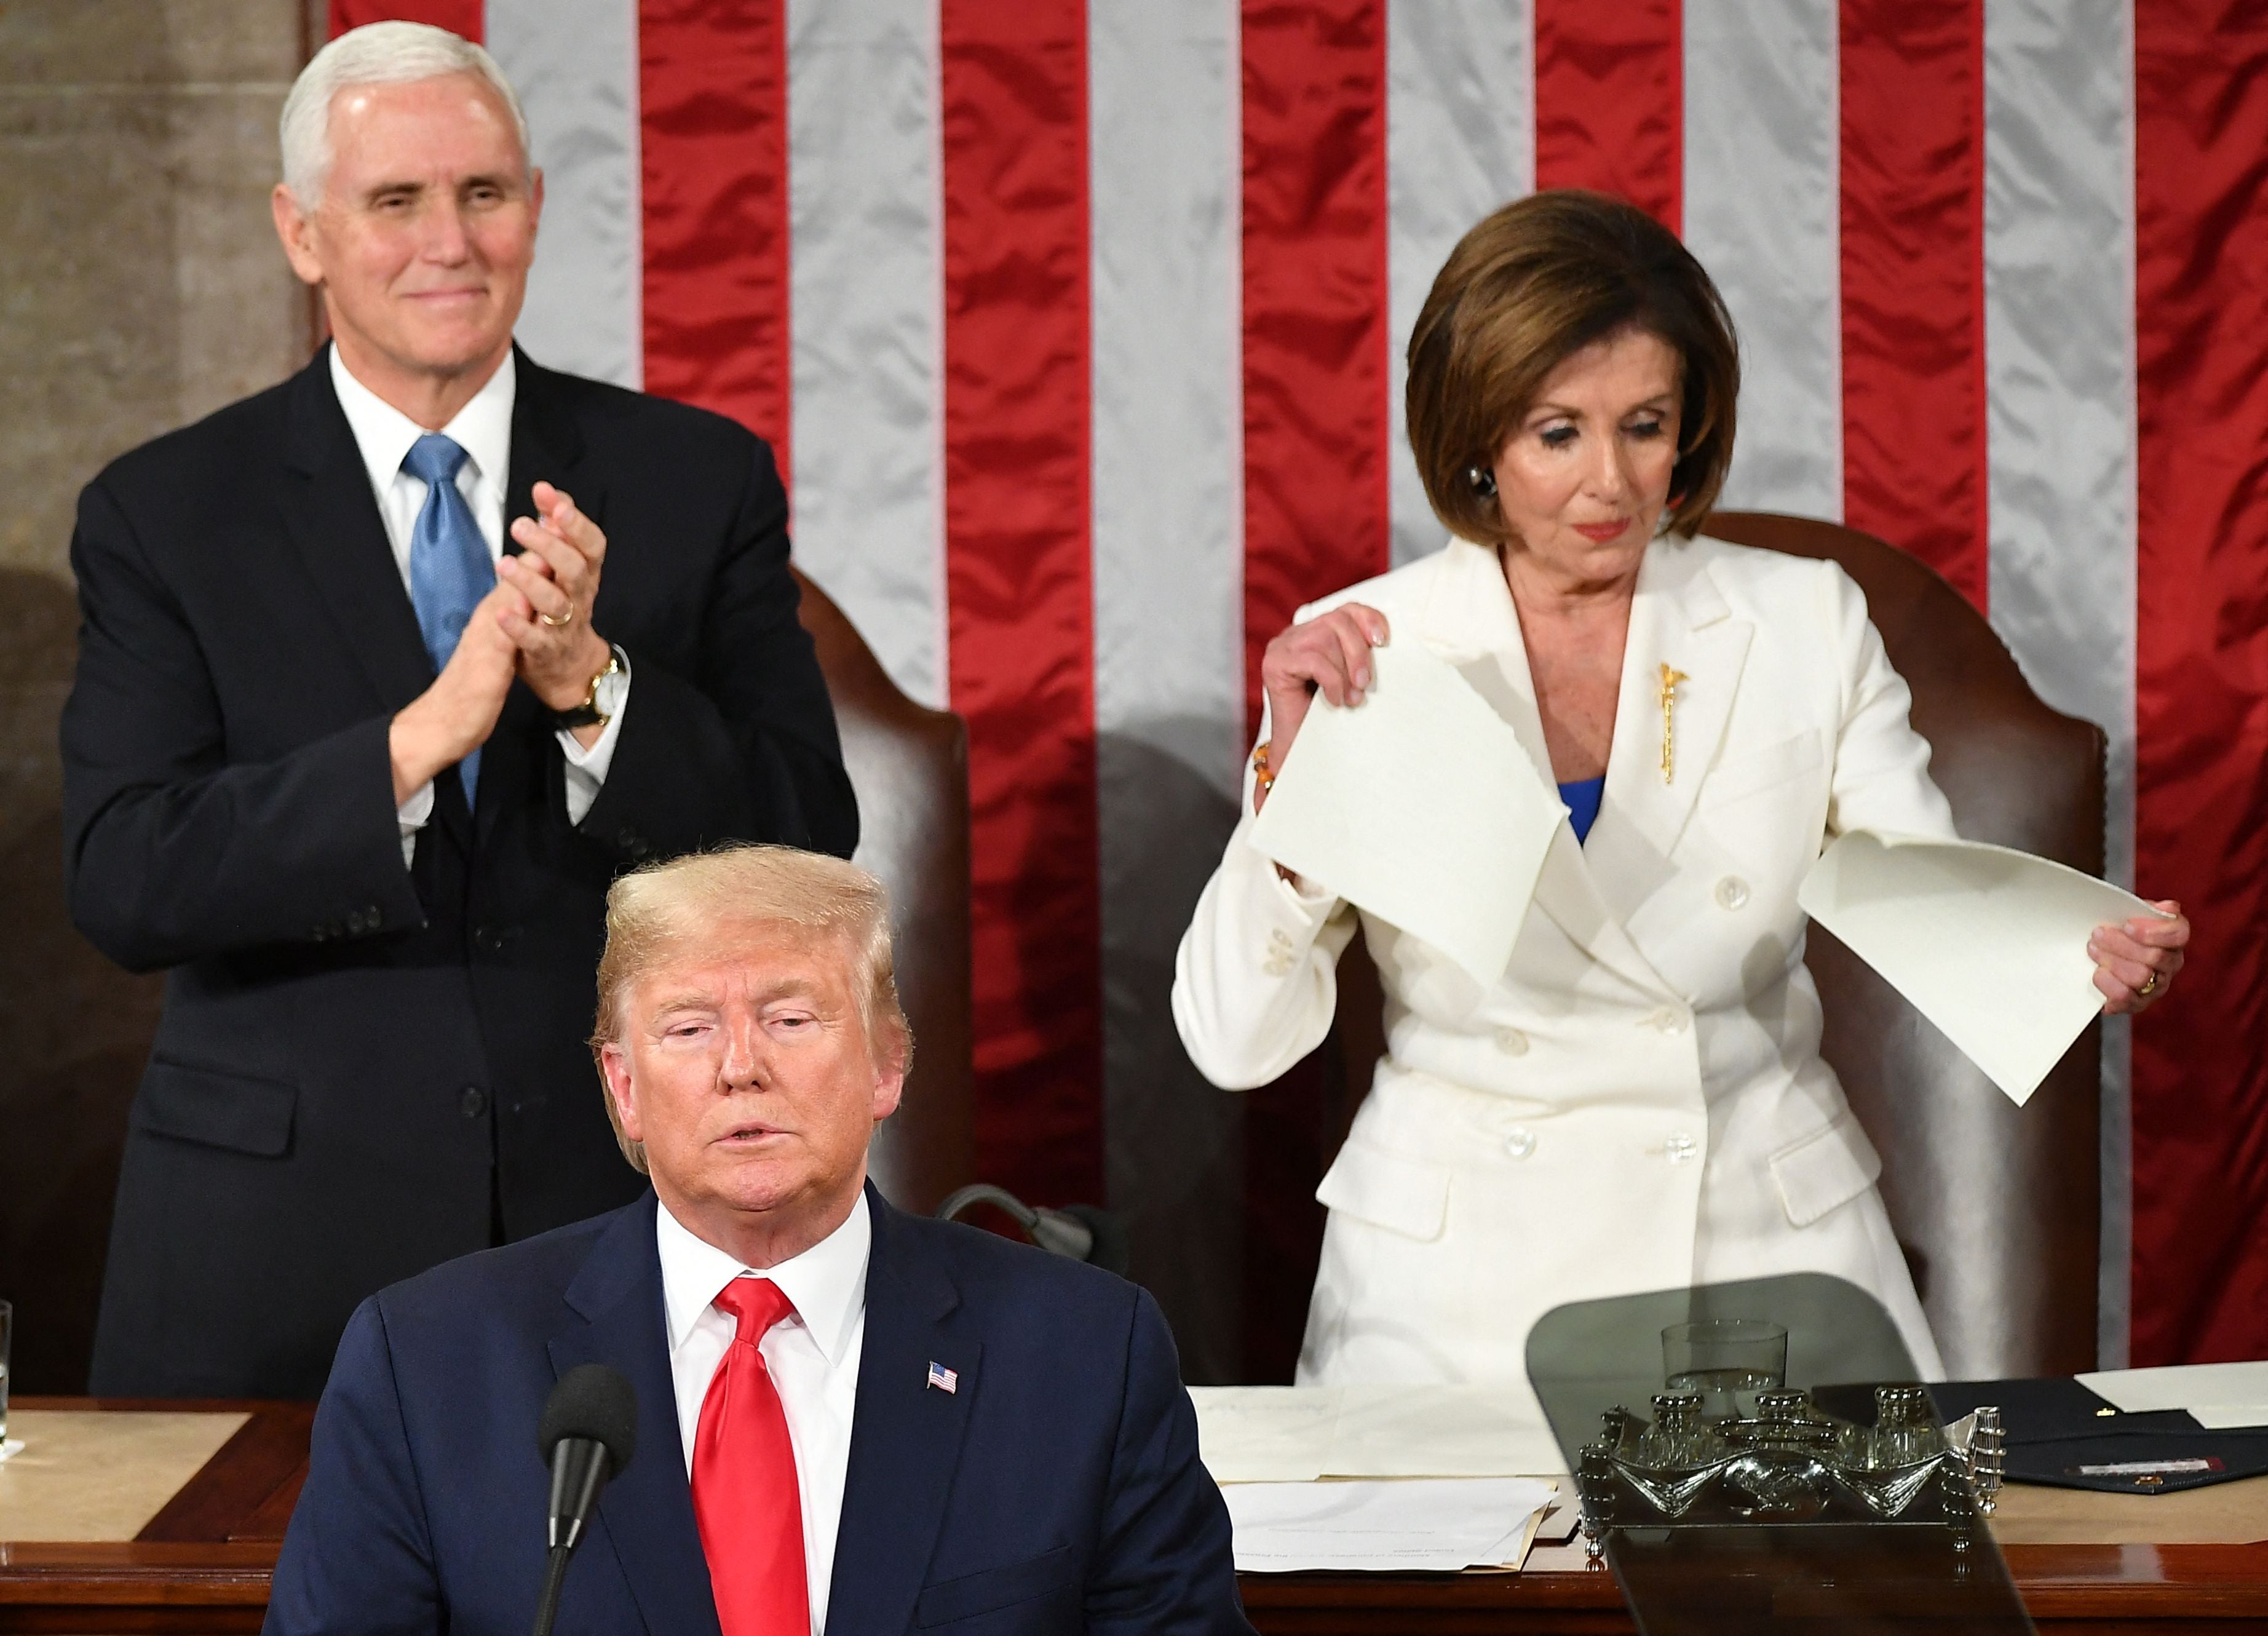 El exvicepresidente Mike Pence aplaude mientras la presidenta la Cámara de Representantes Nancy Pelosi parece romper una copia del discurso del expresidente Donald Trump en el Estado de la Unión en 2020